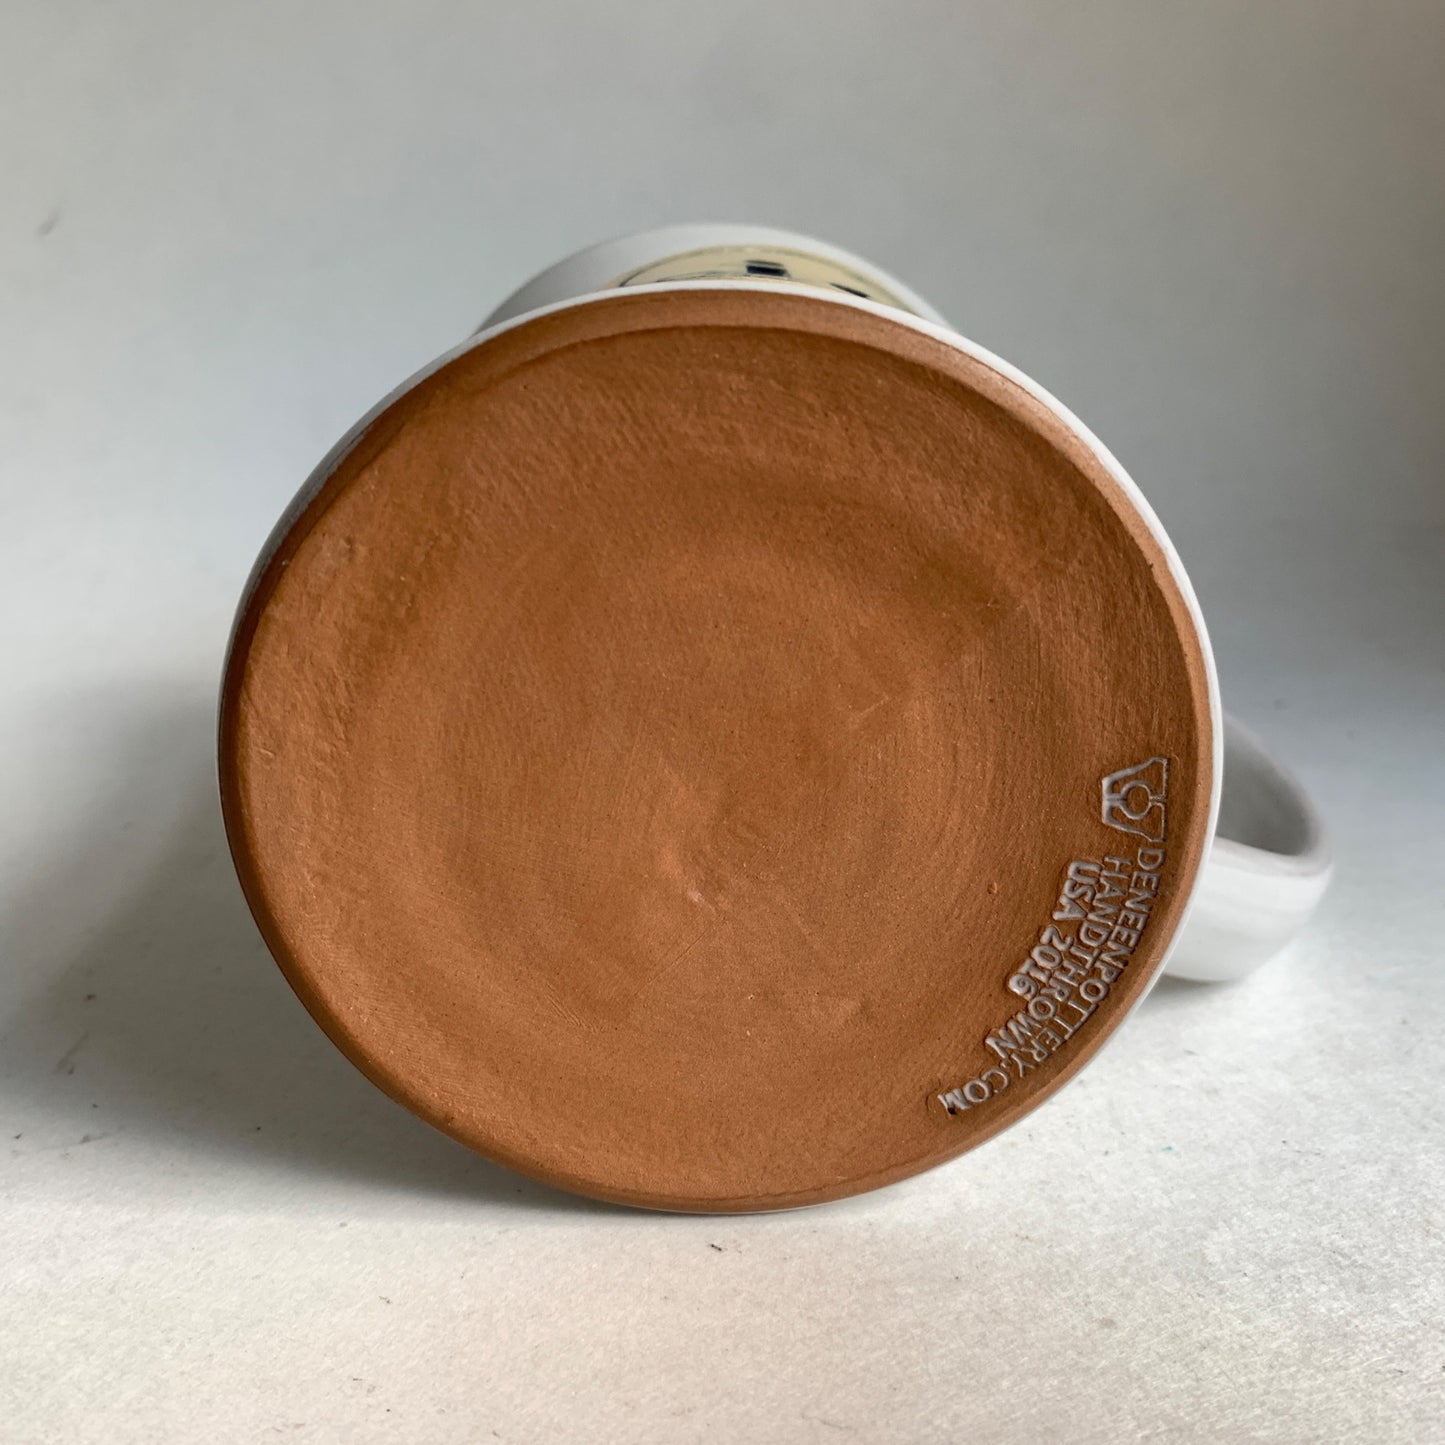 Deneen Pottery ie IE I E Ceramic Coffee Mug Gray